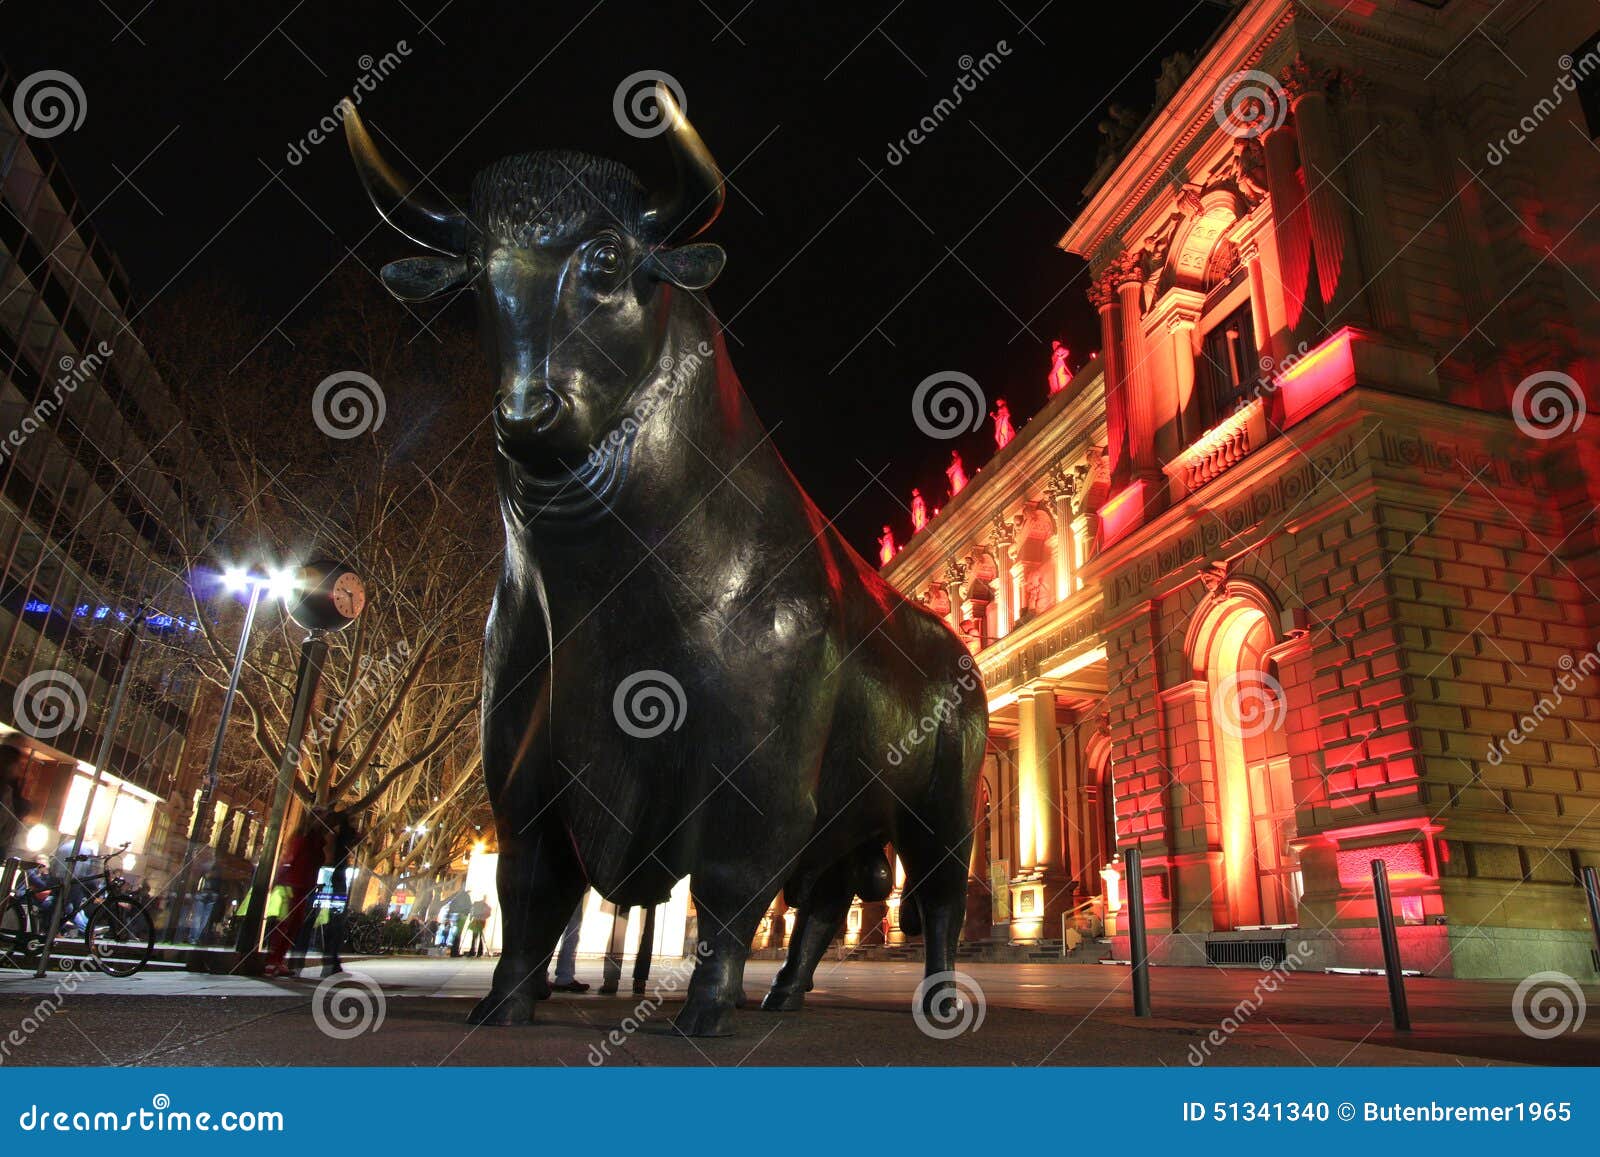 frankfurt stock exchange at night